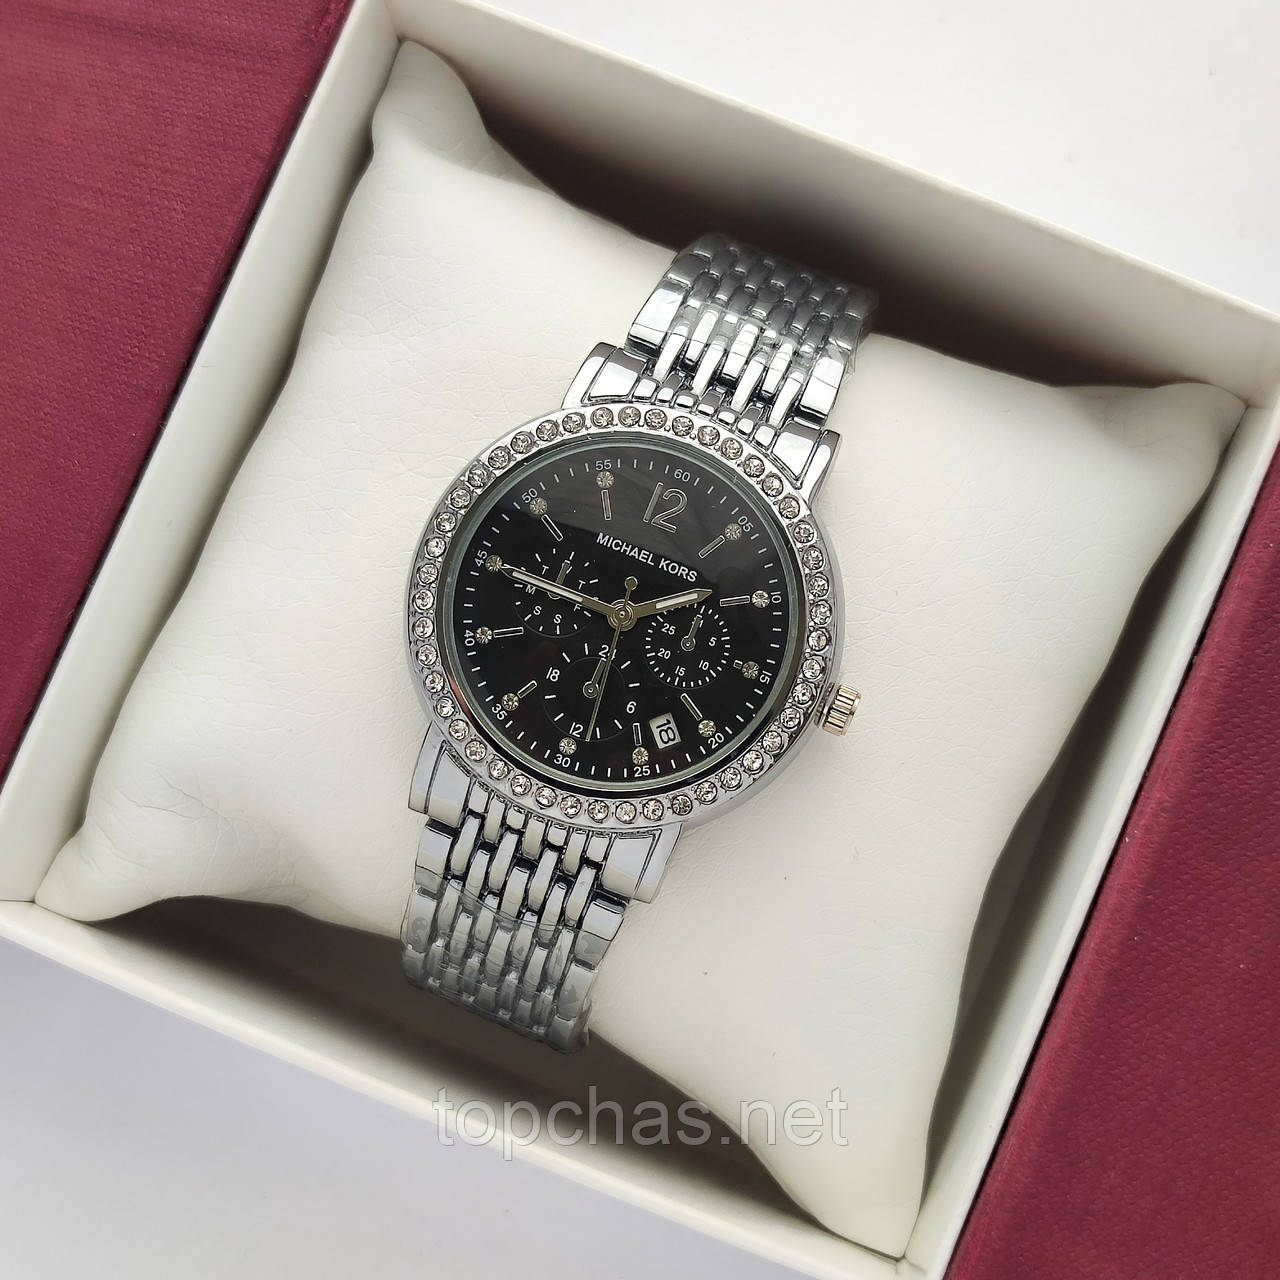 Невеликий жіночий наручний годинник Michael Kors (майкл корс) срібло з чорним циферблатом, камінчики - код 2383b